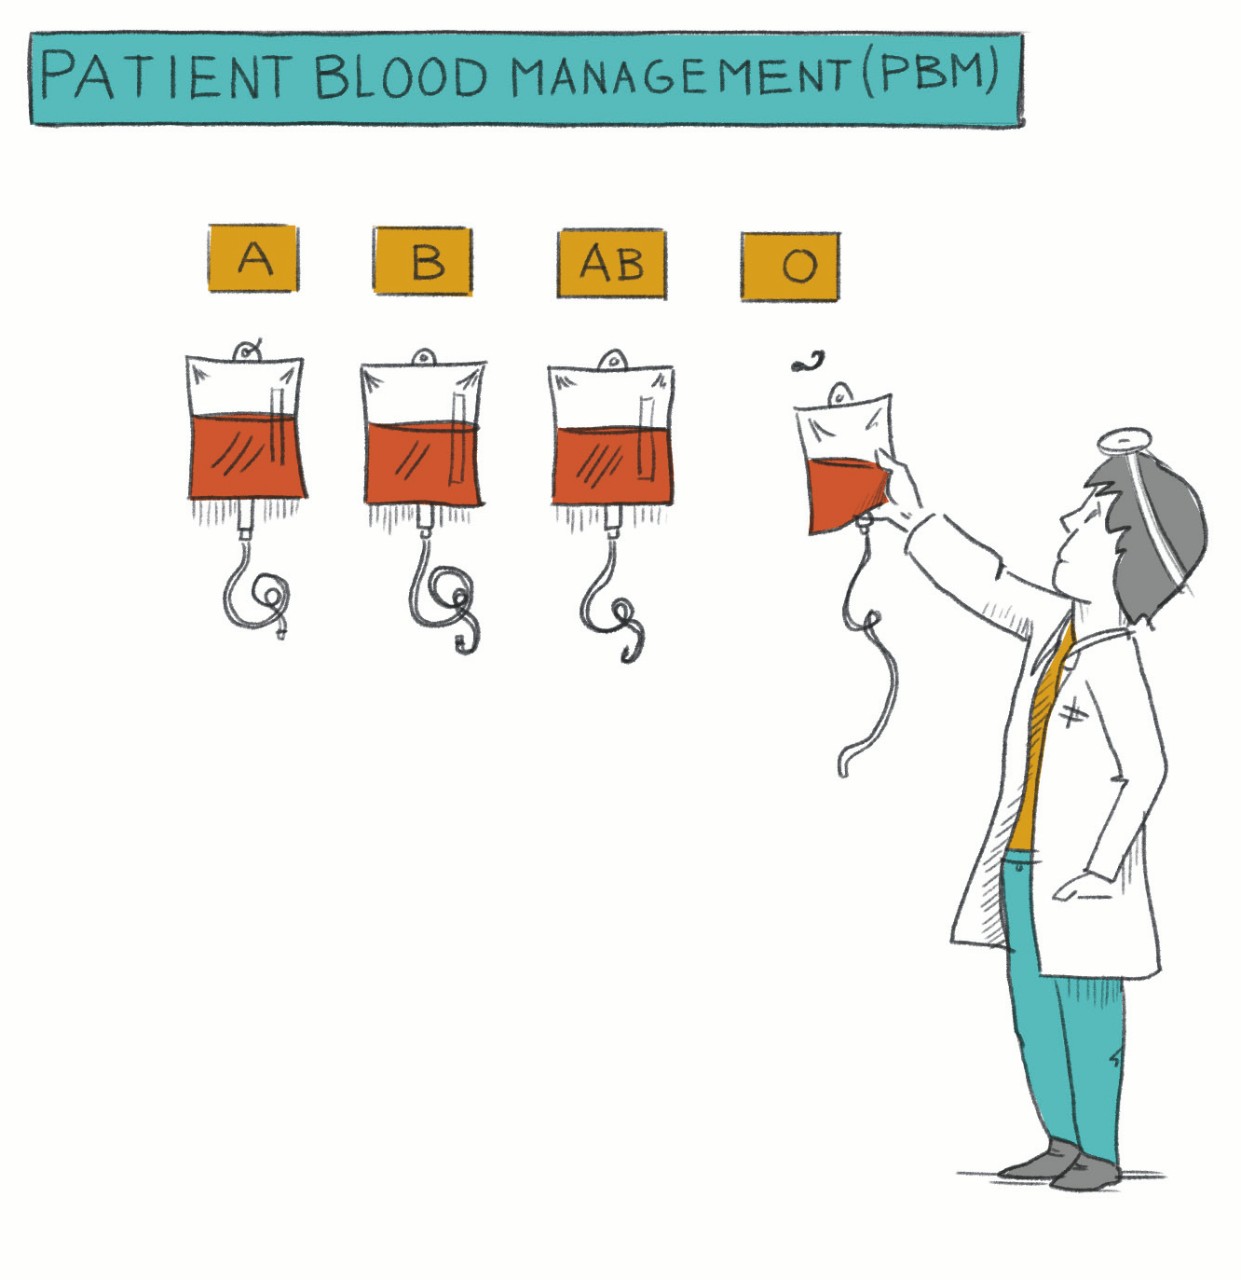 Illustration: Arzt greift zu einer Blutkonserve Bluttgrupe 0 an der Wand weitere Blutgruppen A B AB, Patient Blood Management (PBM)